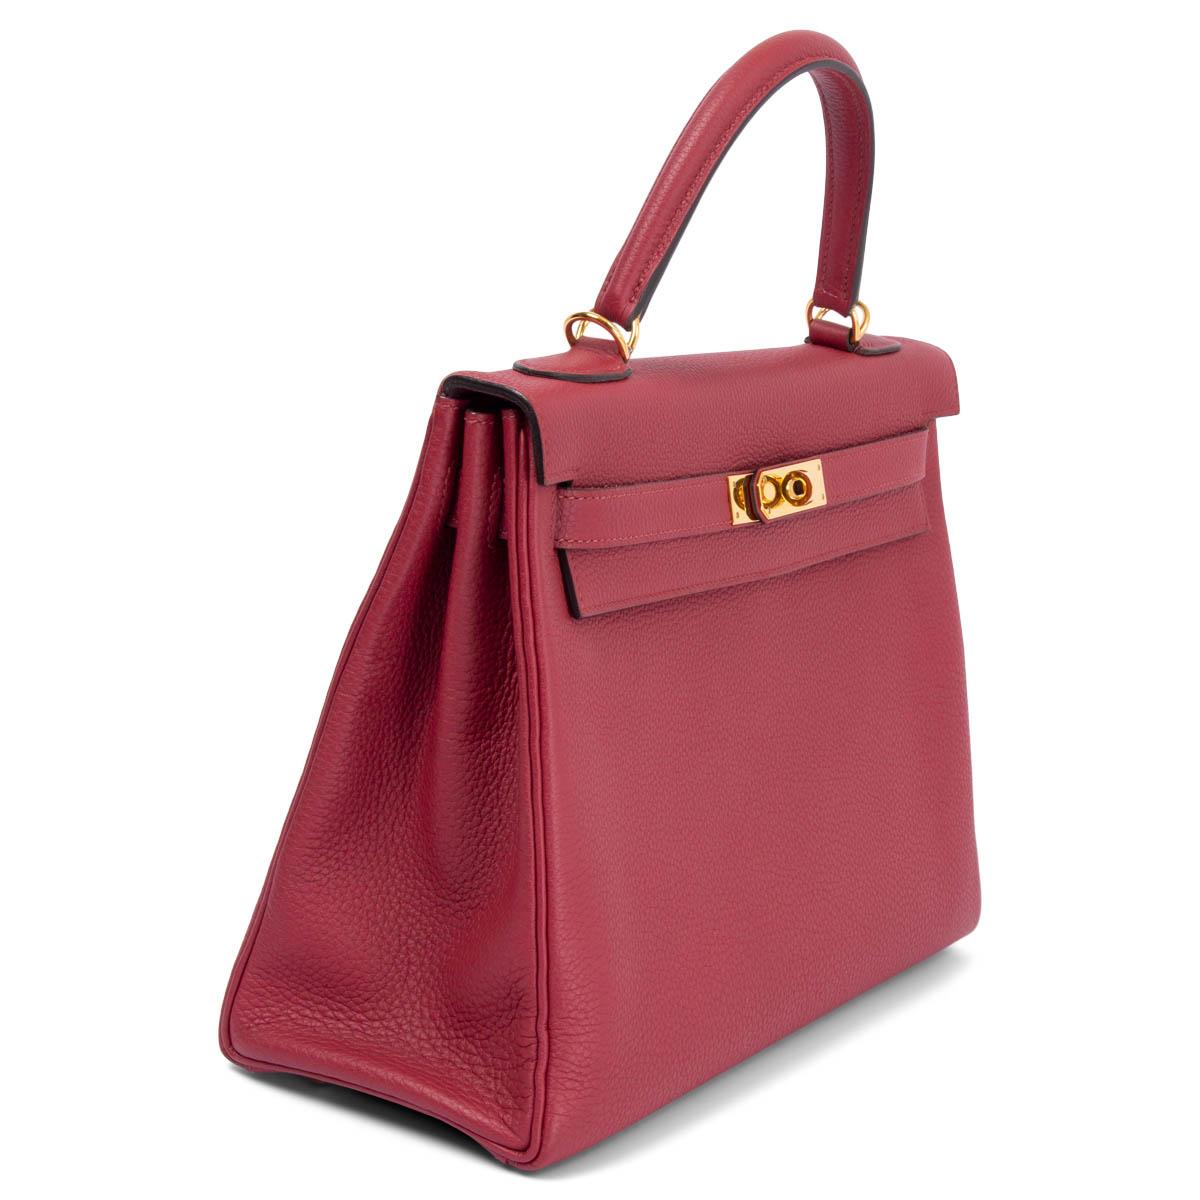 100% authentische Hermès Kelly 32 Retourne Tasche in Rouge Grenat Veau Togo Leder mit goldfarbener Hardware. Gefüttert mit Cherve (Ziegenleder), mit zwei offenen Taschen auf der Vorderseite und einer Reißverschlusstasche auf der Rückseite. Wurde